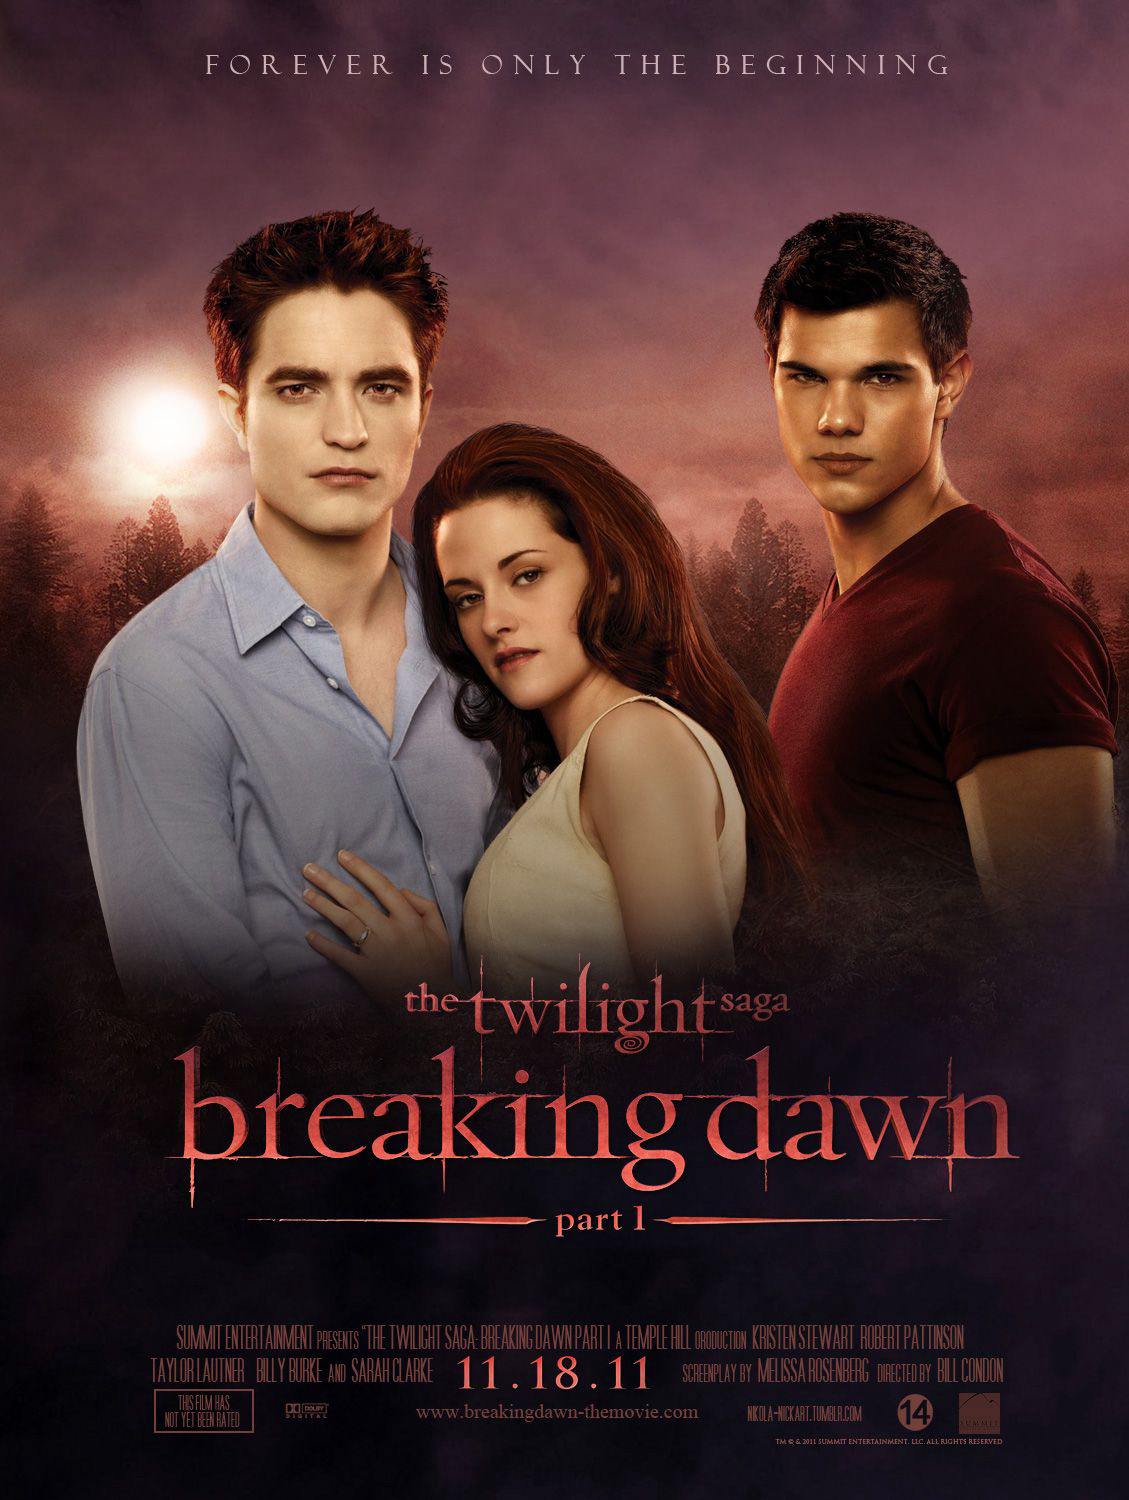 Chạng vạng: Hừng đông: Phần 1 - The Twilight Saga: Breaking Dawn: Part 1